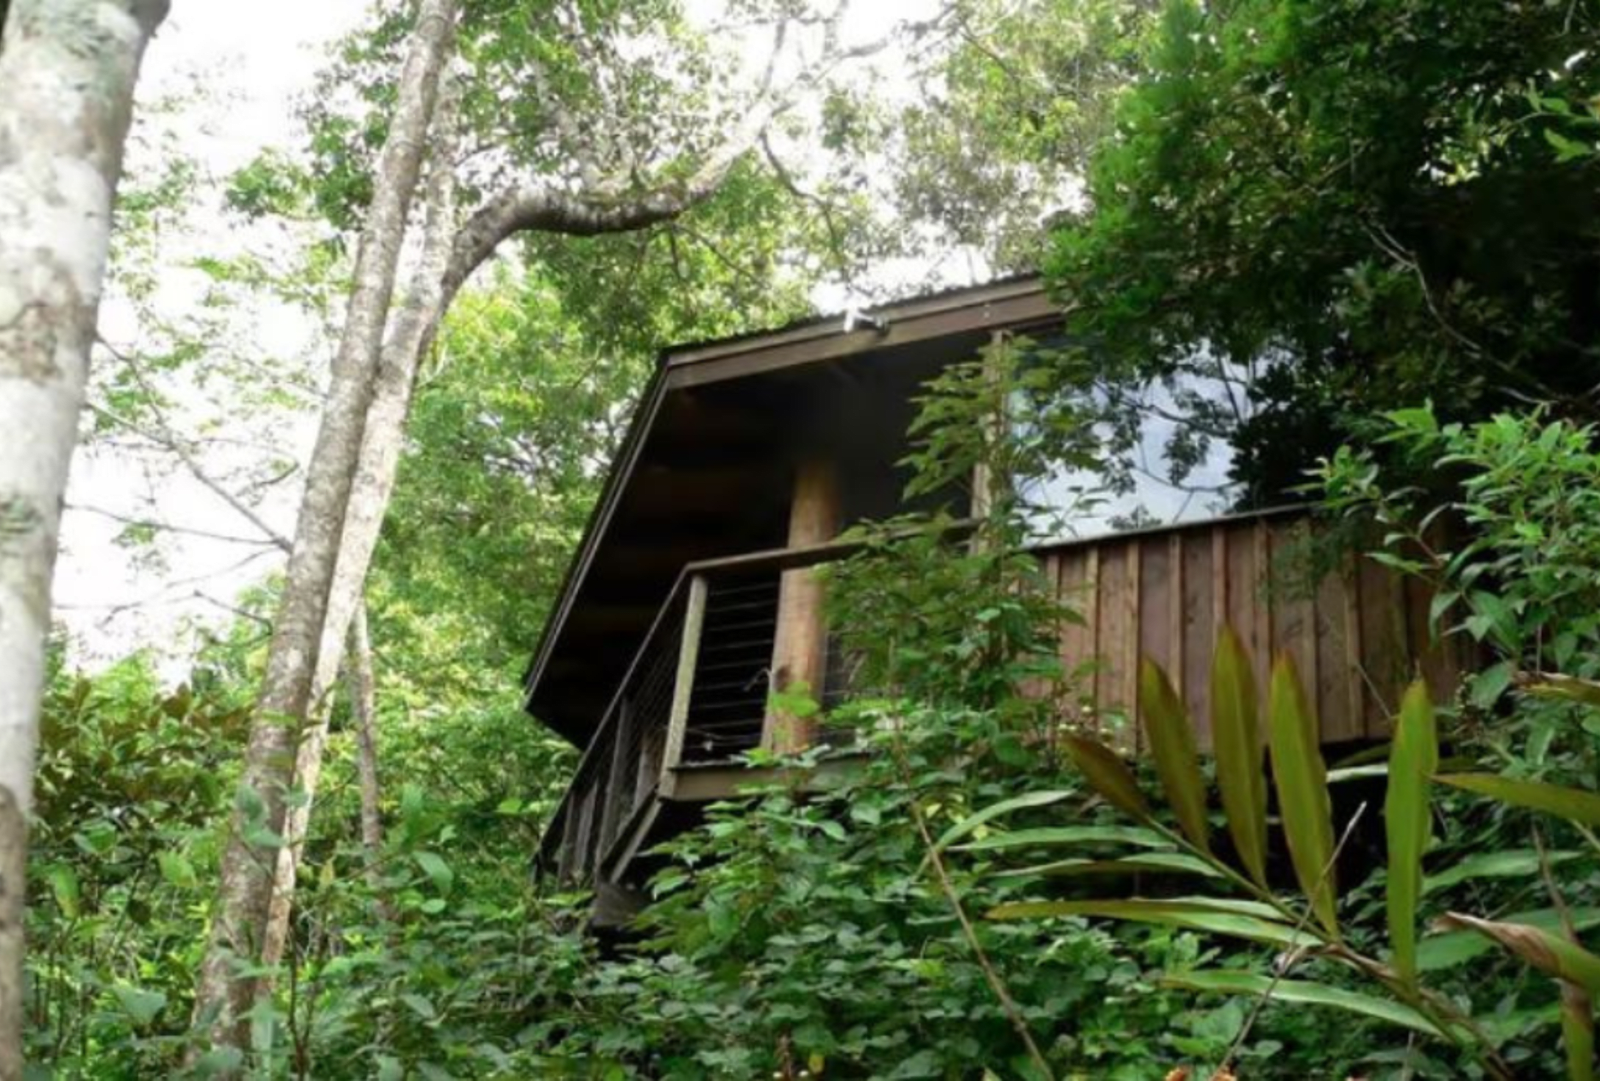 A treehouse amongst the rainforest foliage.